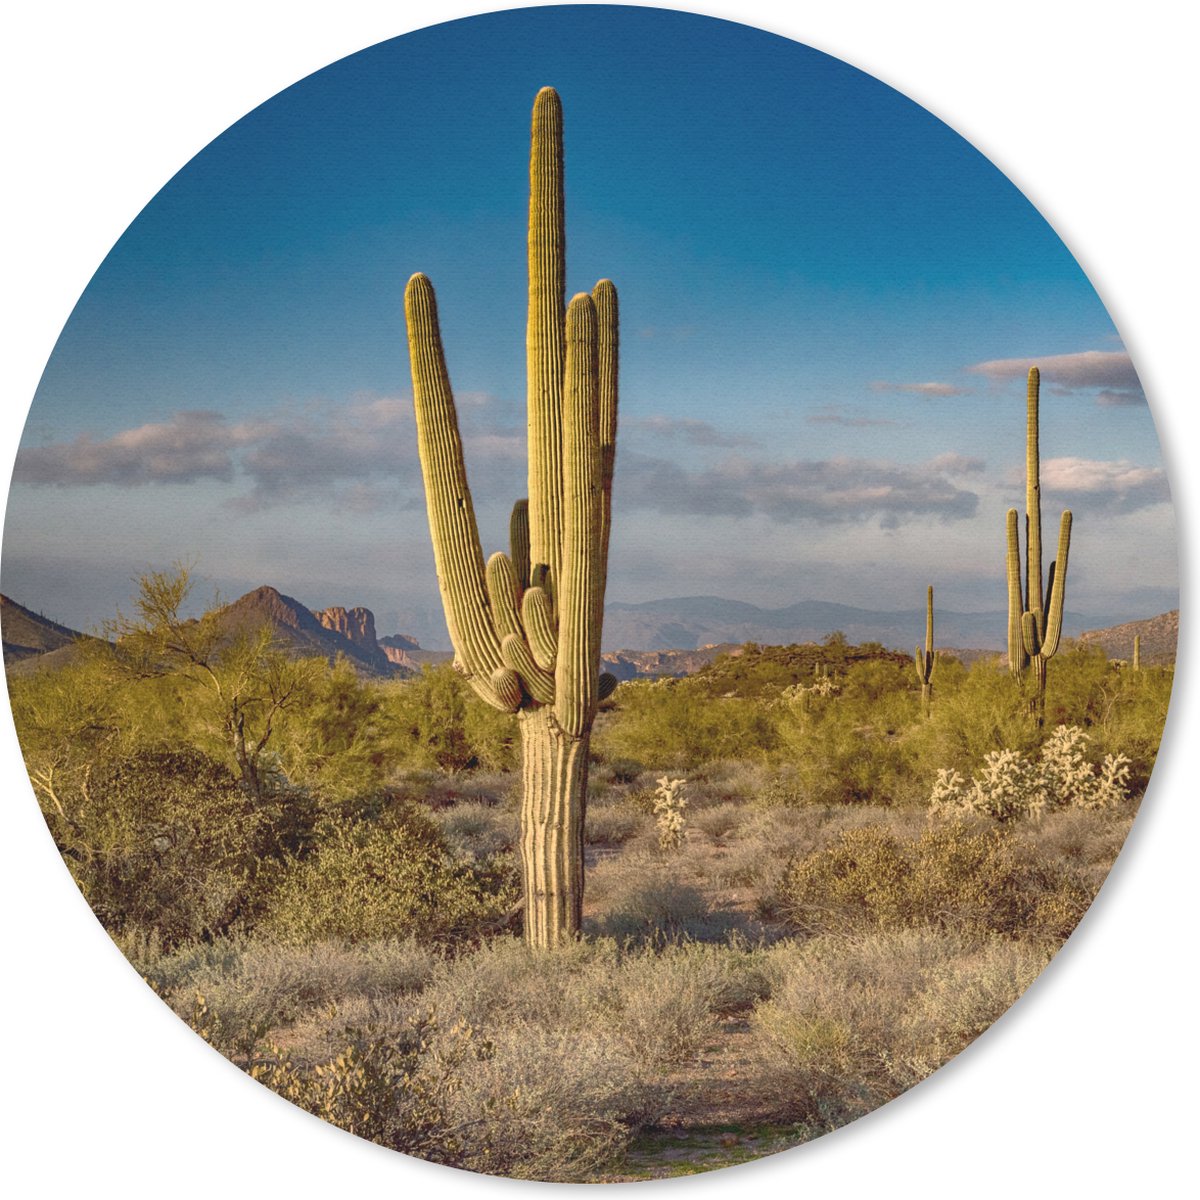 Muismat - Mousepad - Rond - Cactus bij zonsondergang in Arizona - 30x30 cm - Ronde muismat